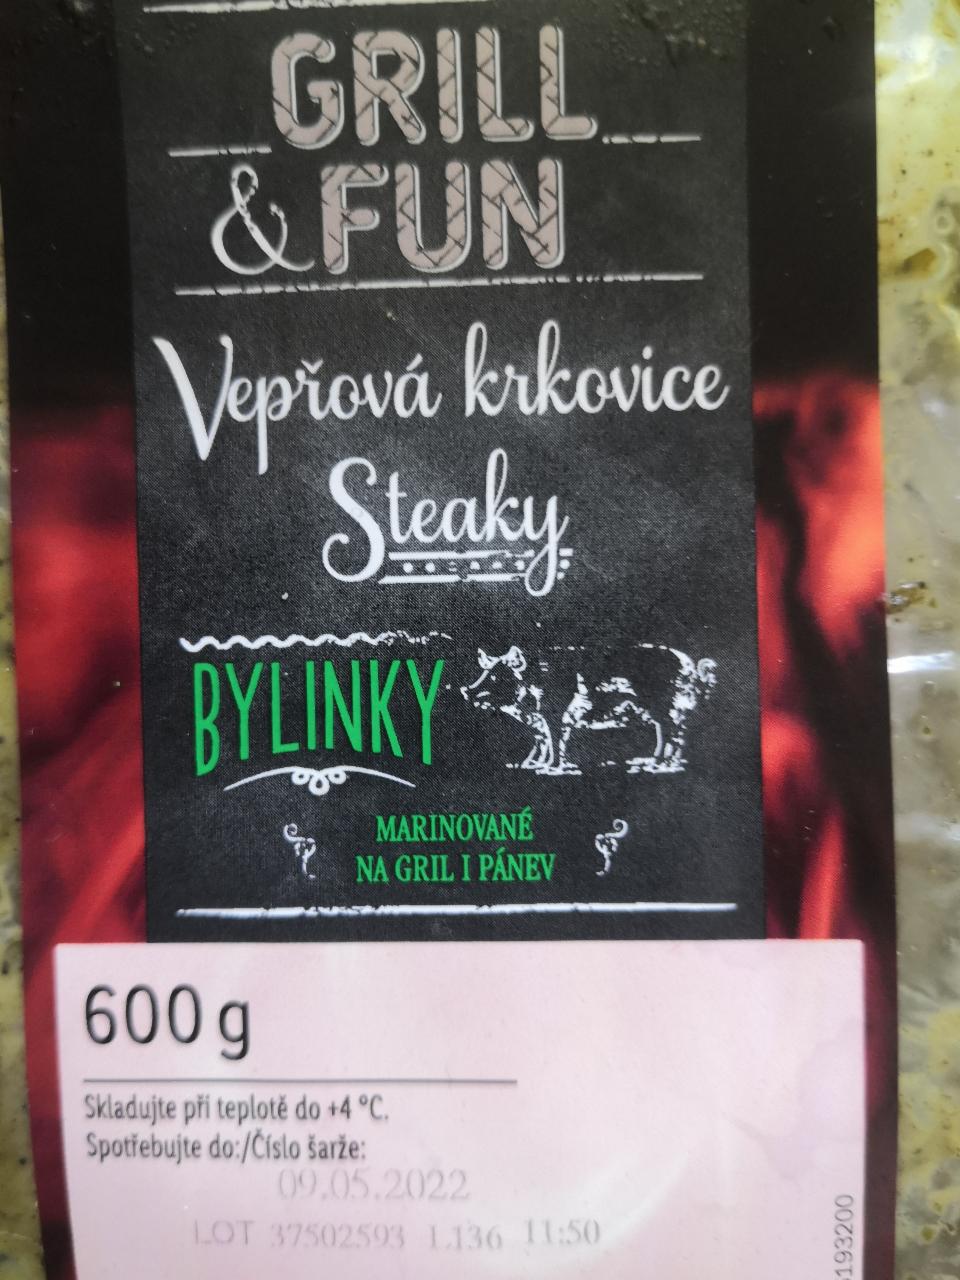 Fotografie - Steaky Vepřová krkovice Bylinky Grill & Fun